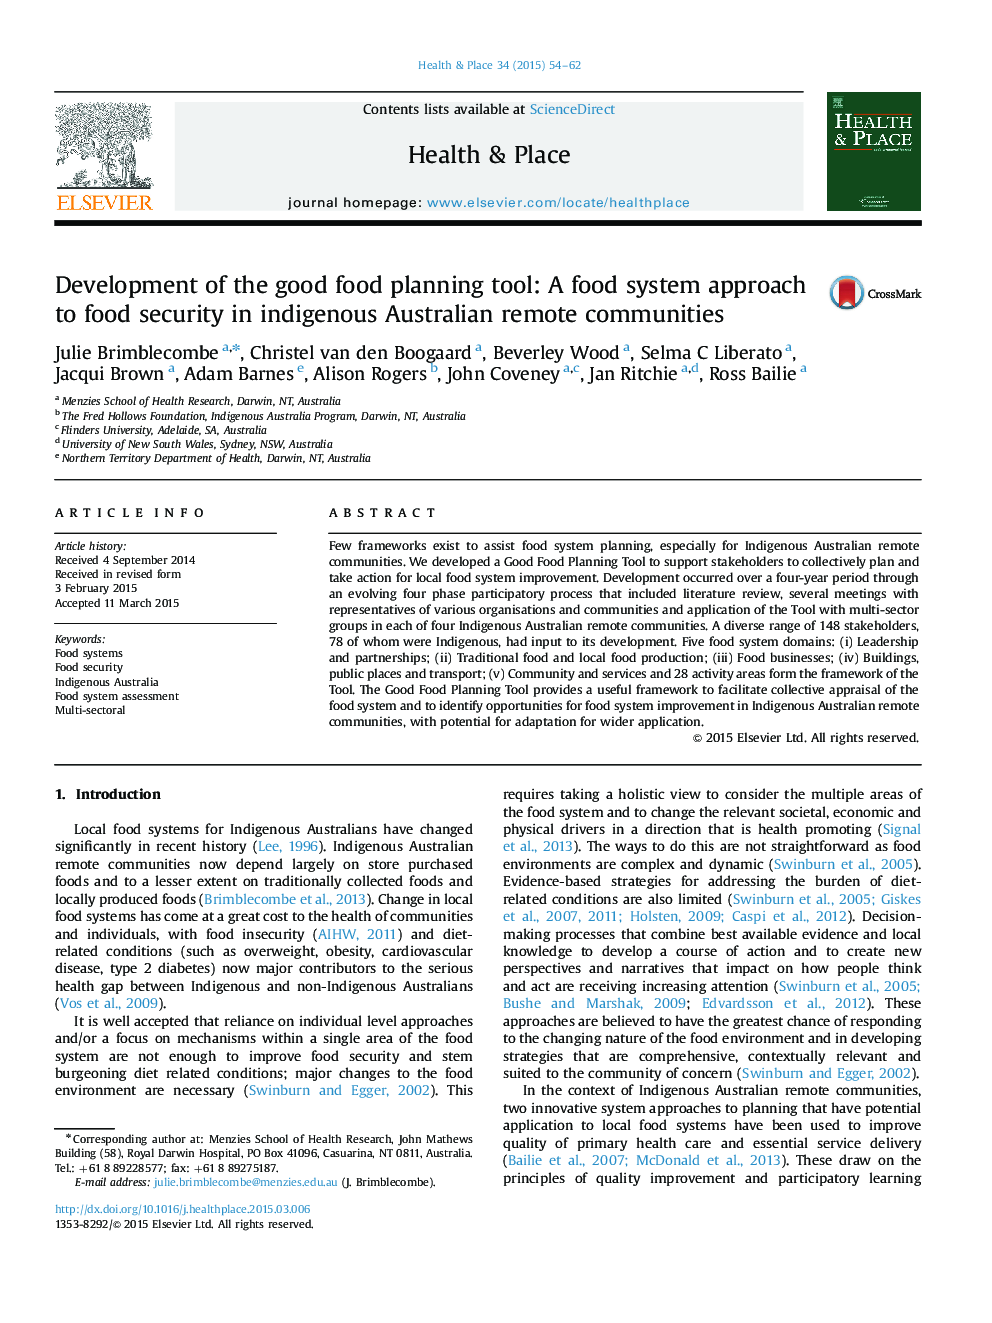 توسعه ابزار برنامه ریزی غذایی خوب: رویکرد سیستم غذا به امنیت غذایی در جوامع دور افتاده استرالیا بومی 